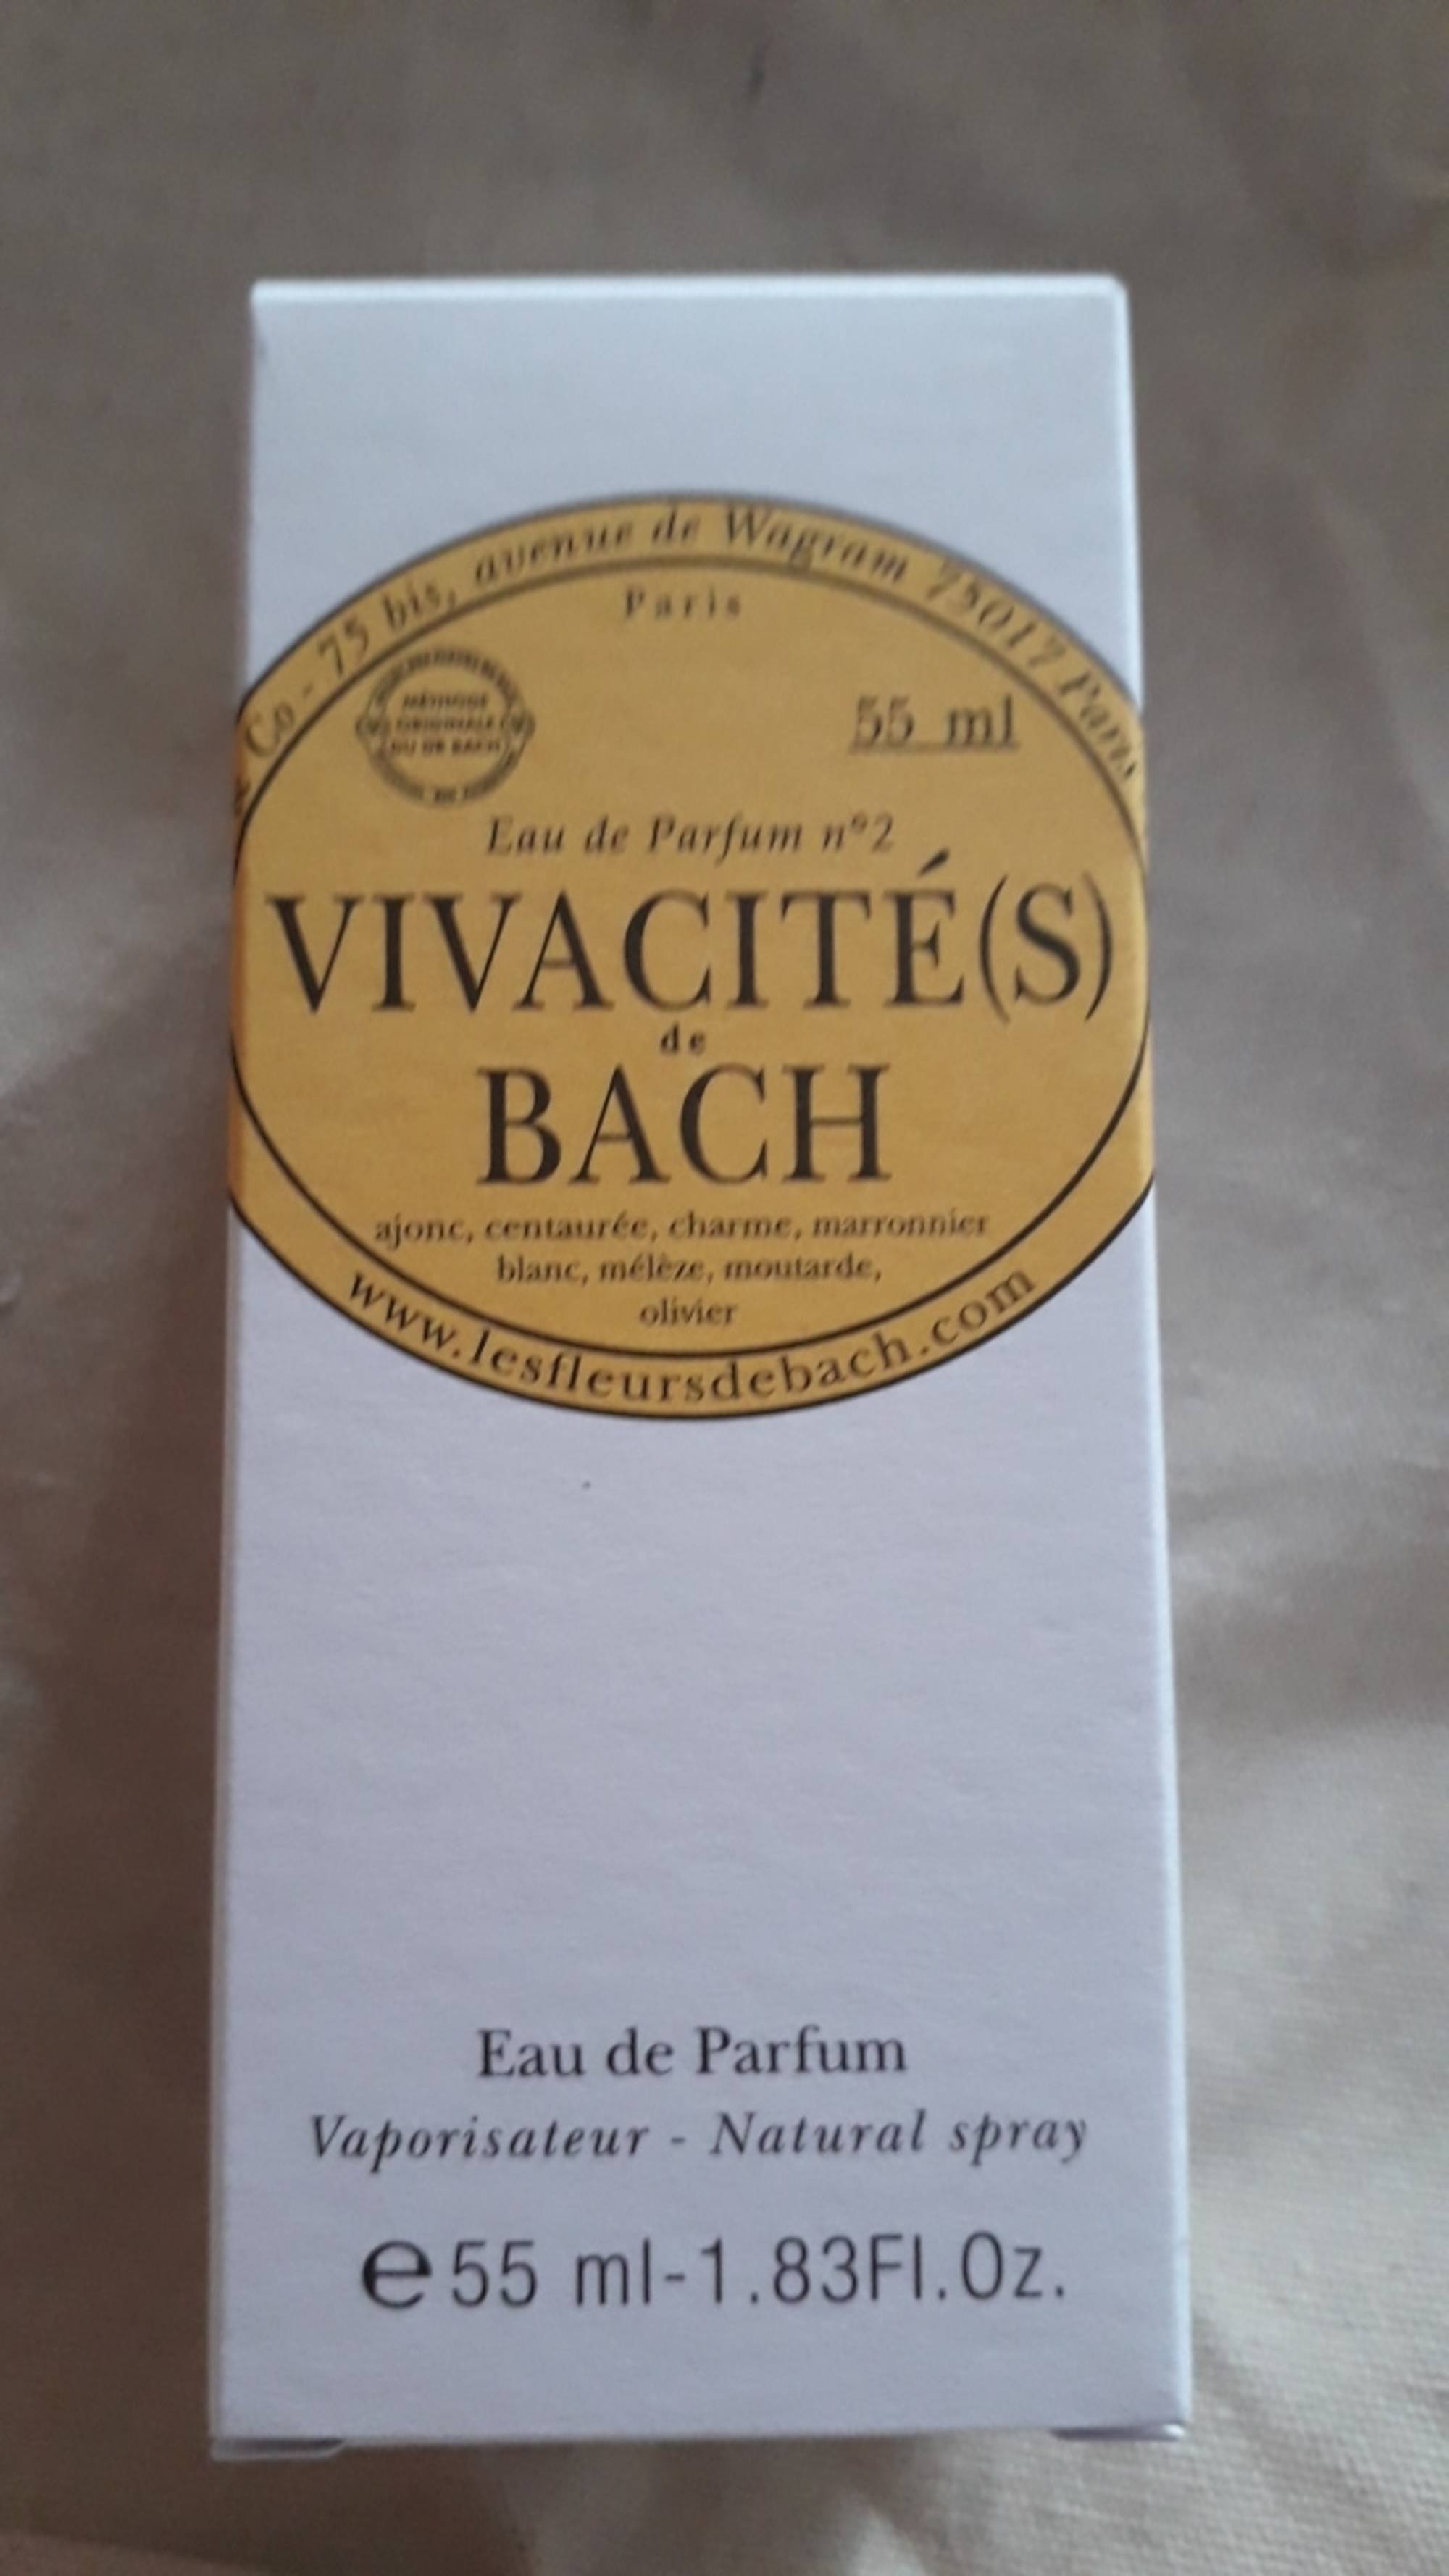 LES FLEURS DE BACH - Vivacité(s) de bach - Eau de parfum n° 2